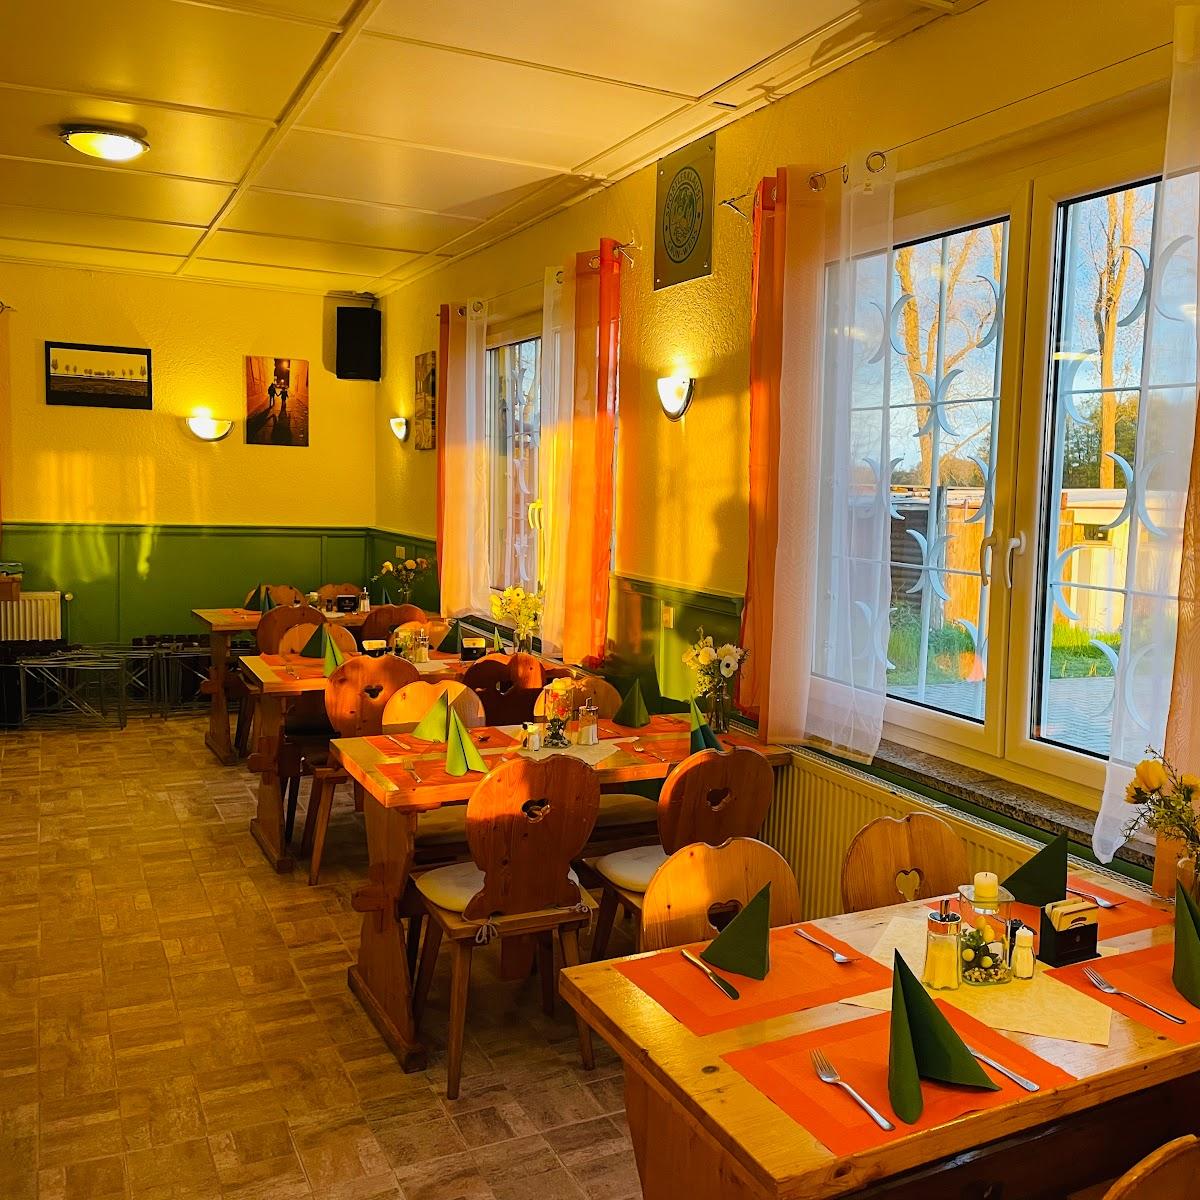 Restaurant "Sportlerklause Restaurant Klein Kreutz" in Brandenburg an der Havel